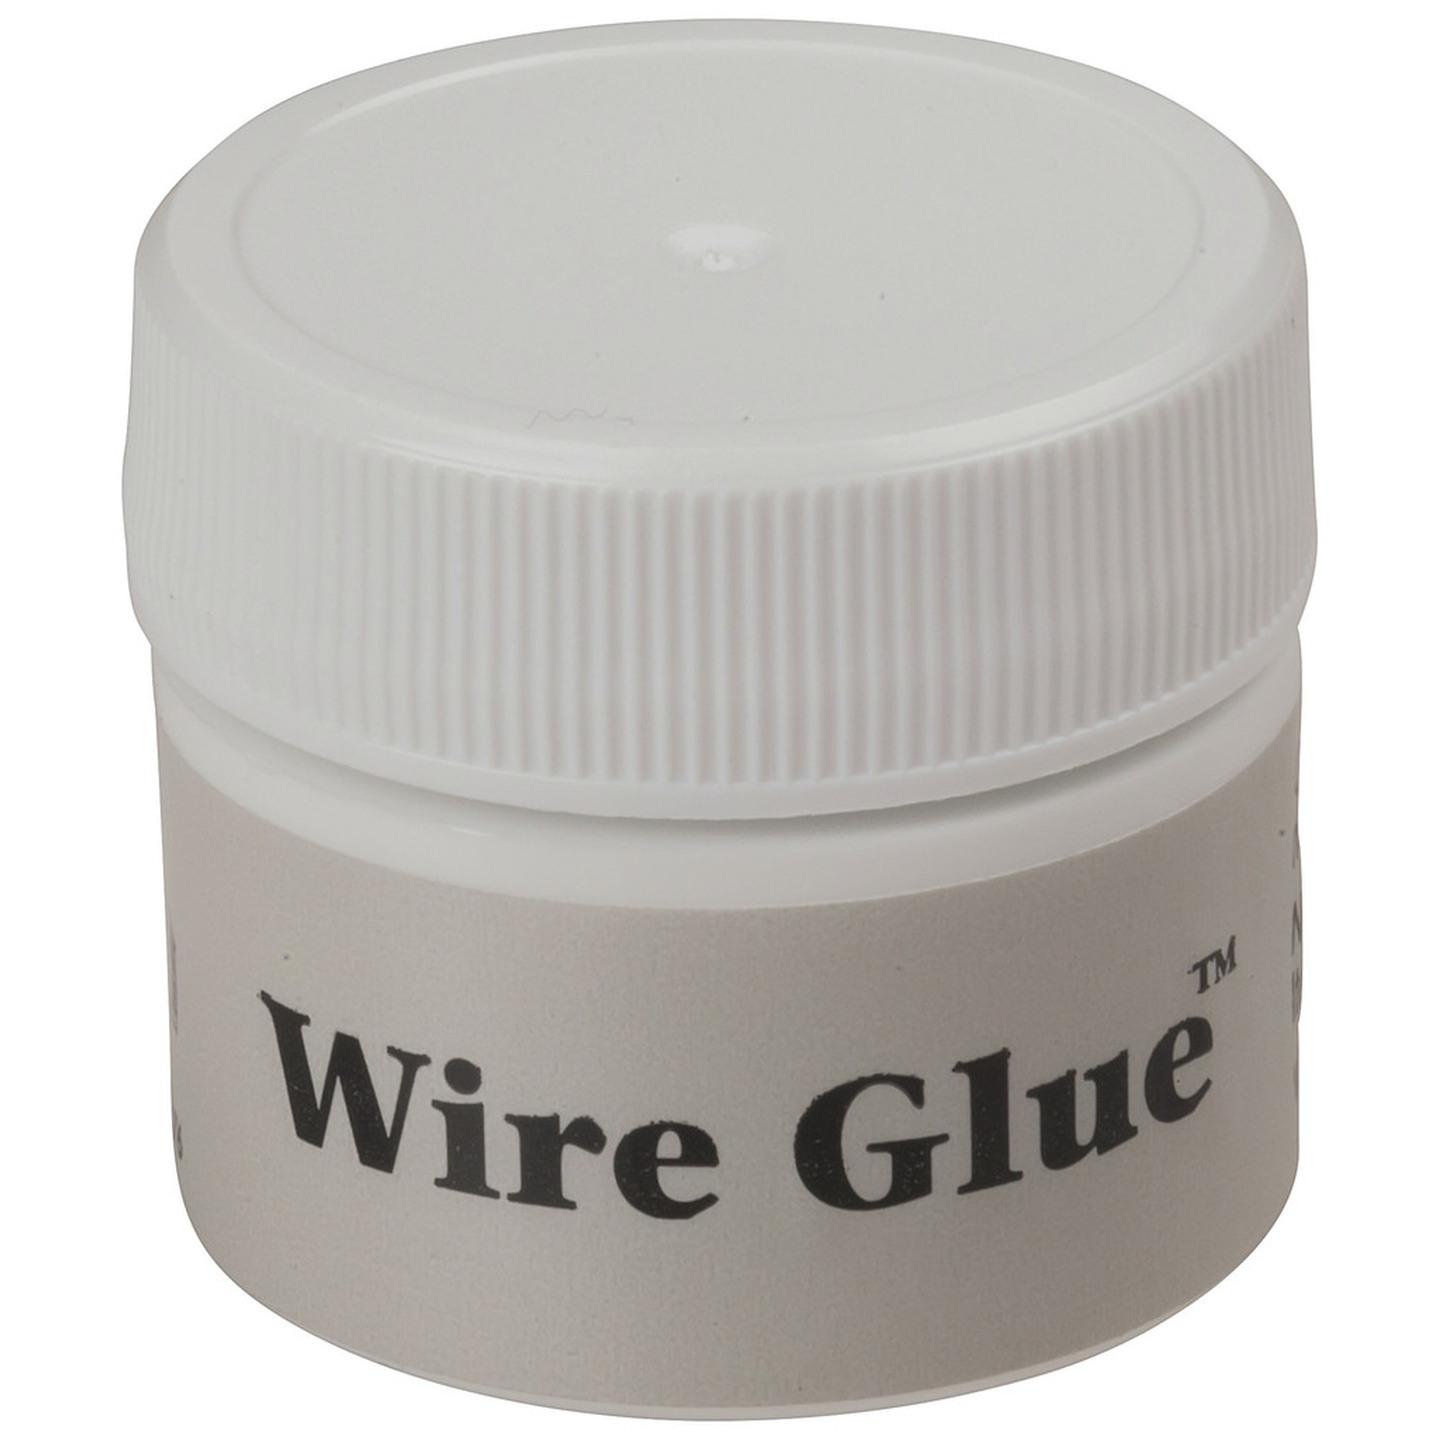 Wire Glue 9ml